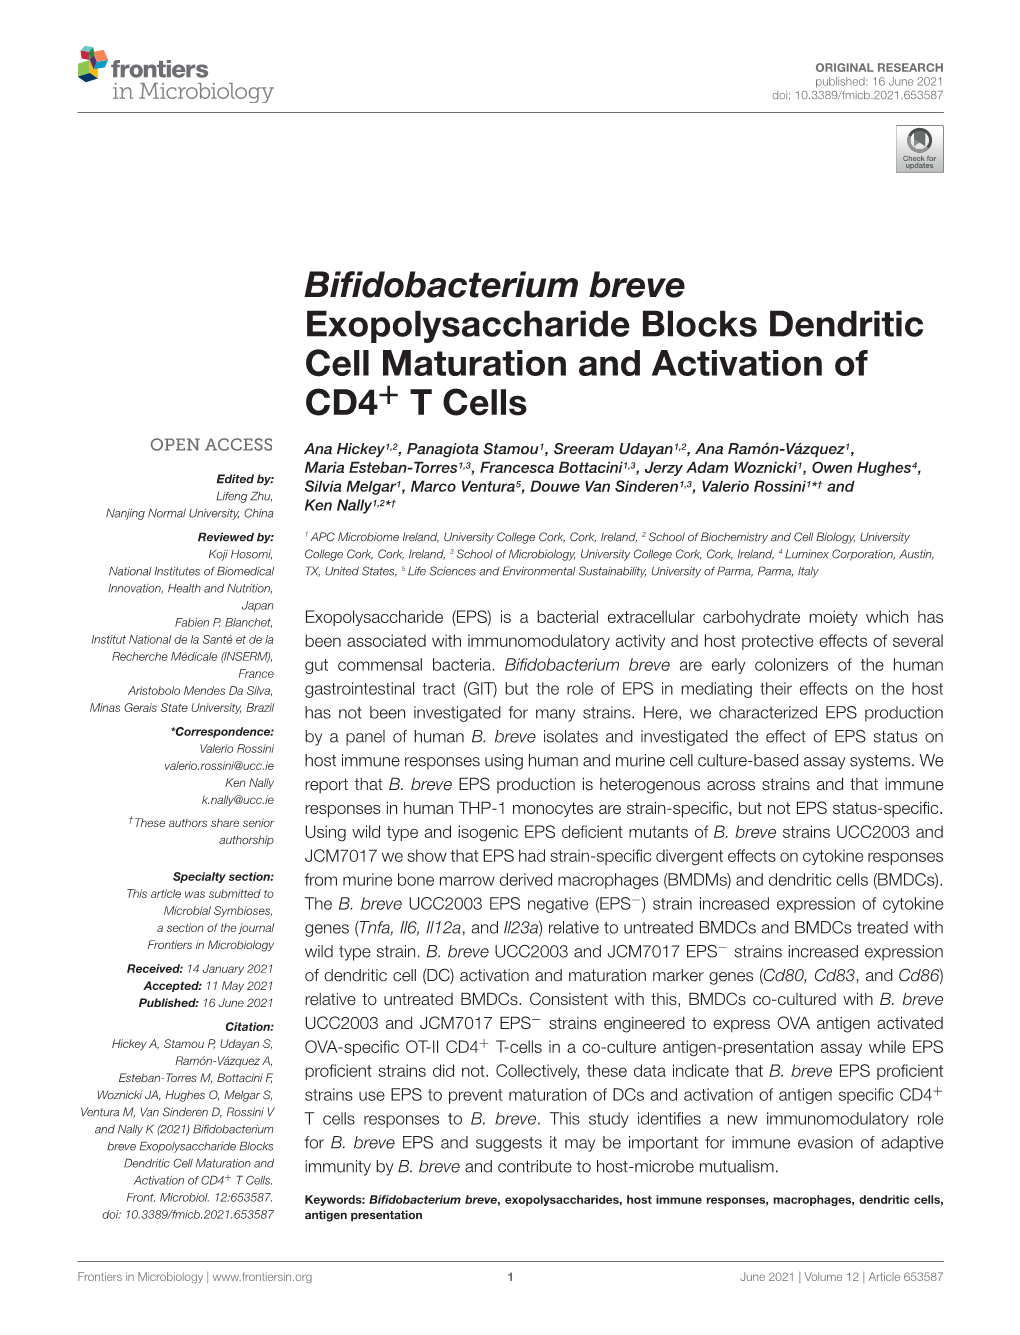 Bifidobacterium Breve Exopolysaccharide Blocks Dendritic